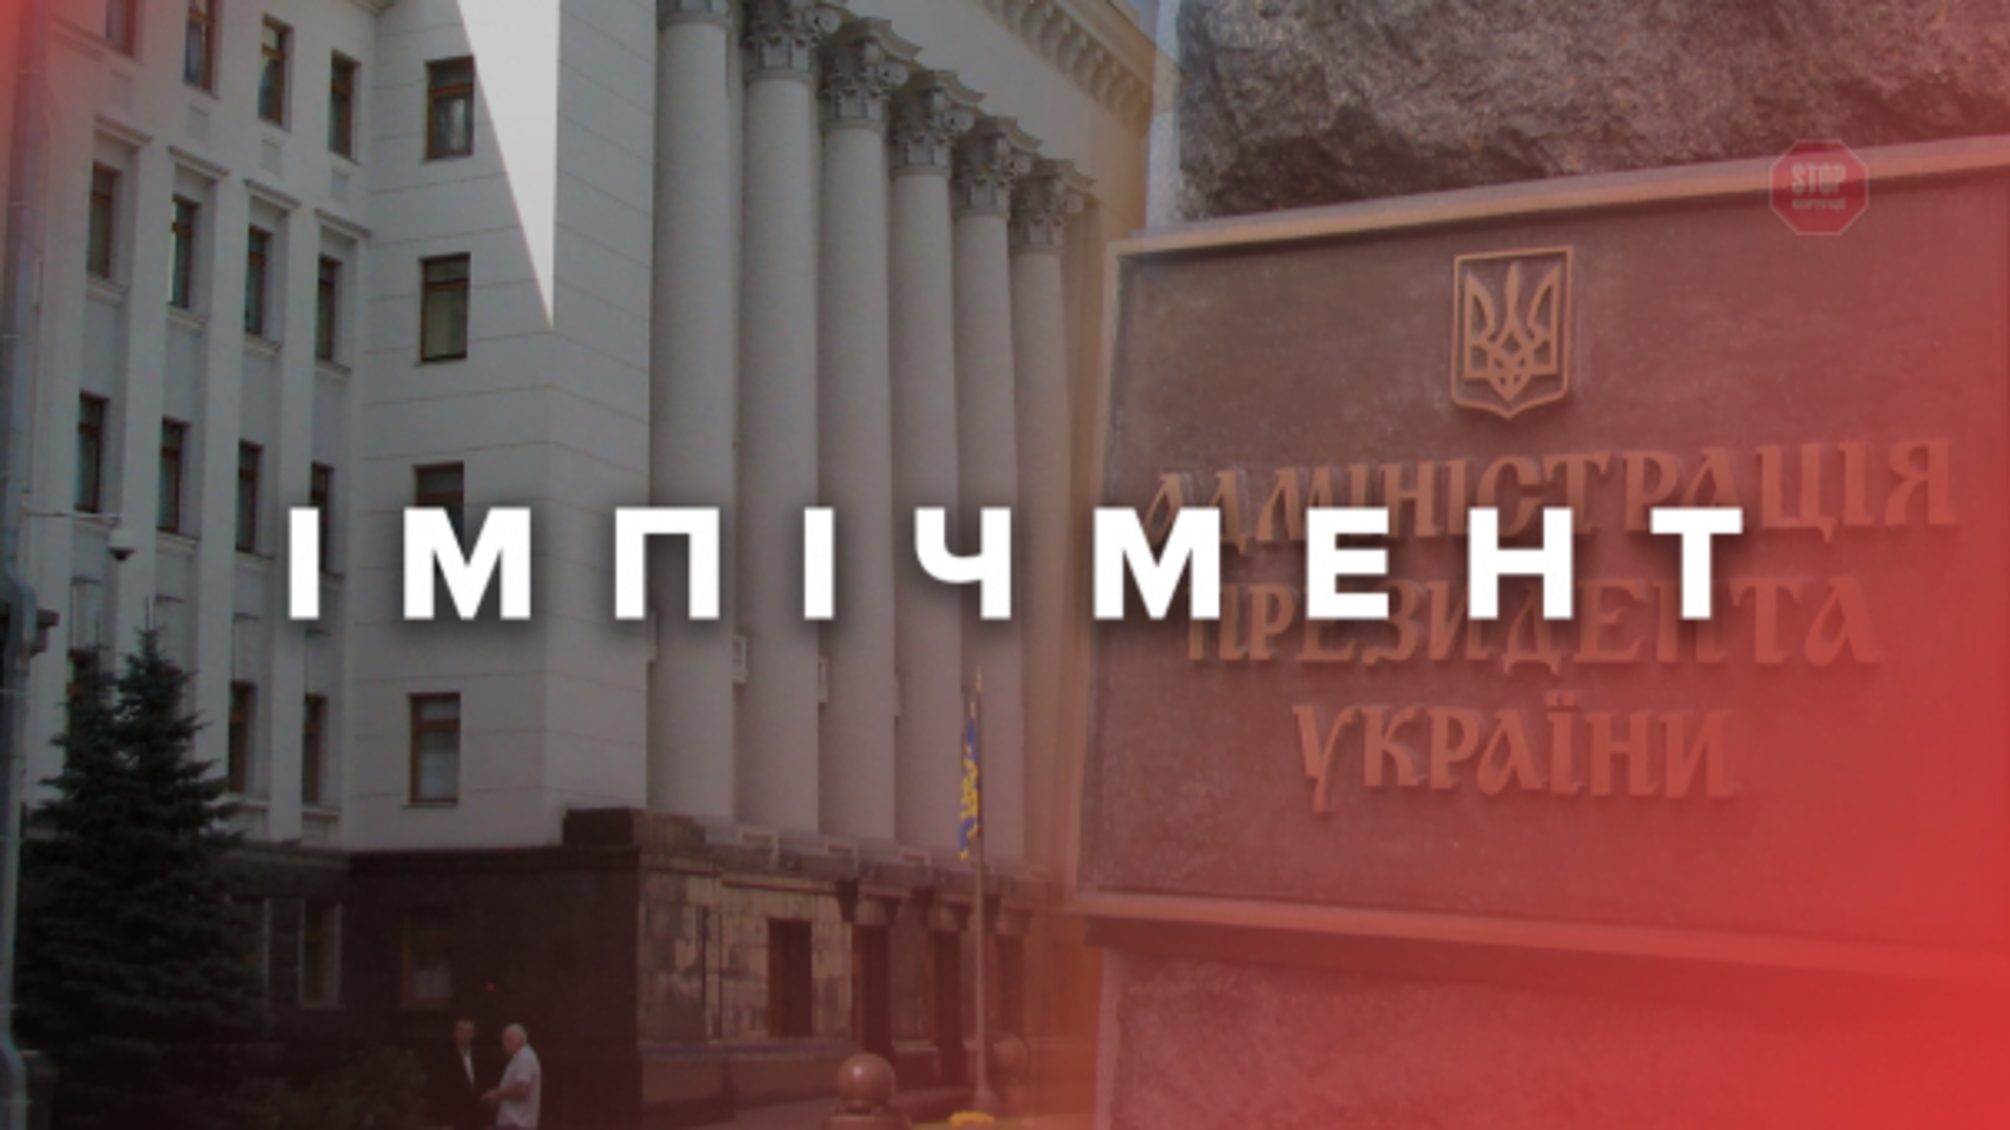 Рада розблокувала закон про імпічмент Зеленського, незважаючи на протест партії Порошенка